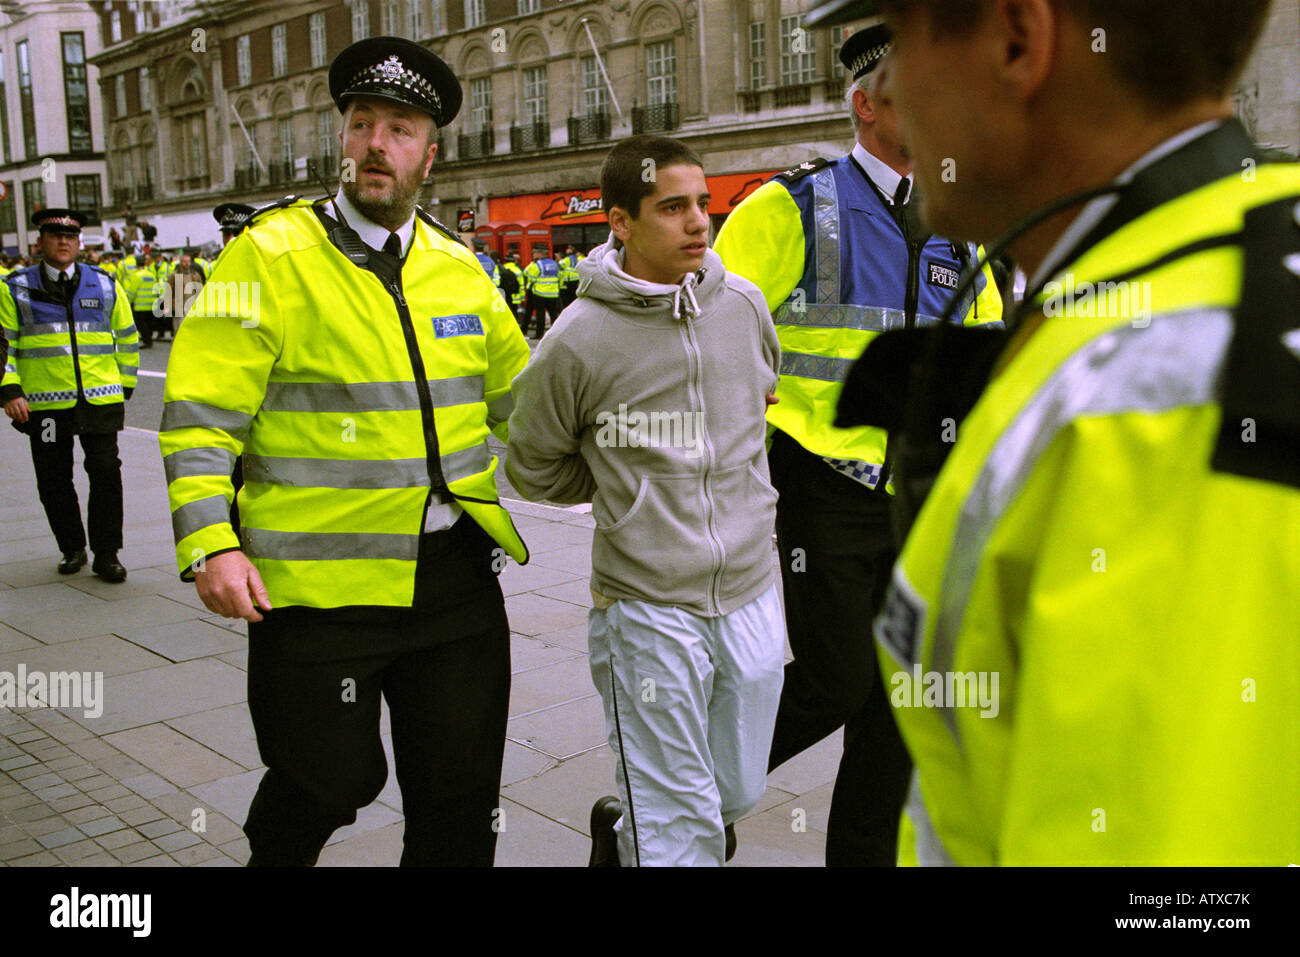 Les agents de police à l'arrestation d'un jeune homme lors d'une manifestation dans le centre de Londres, Mayday 2003. Banque D'Images